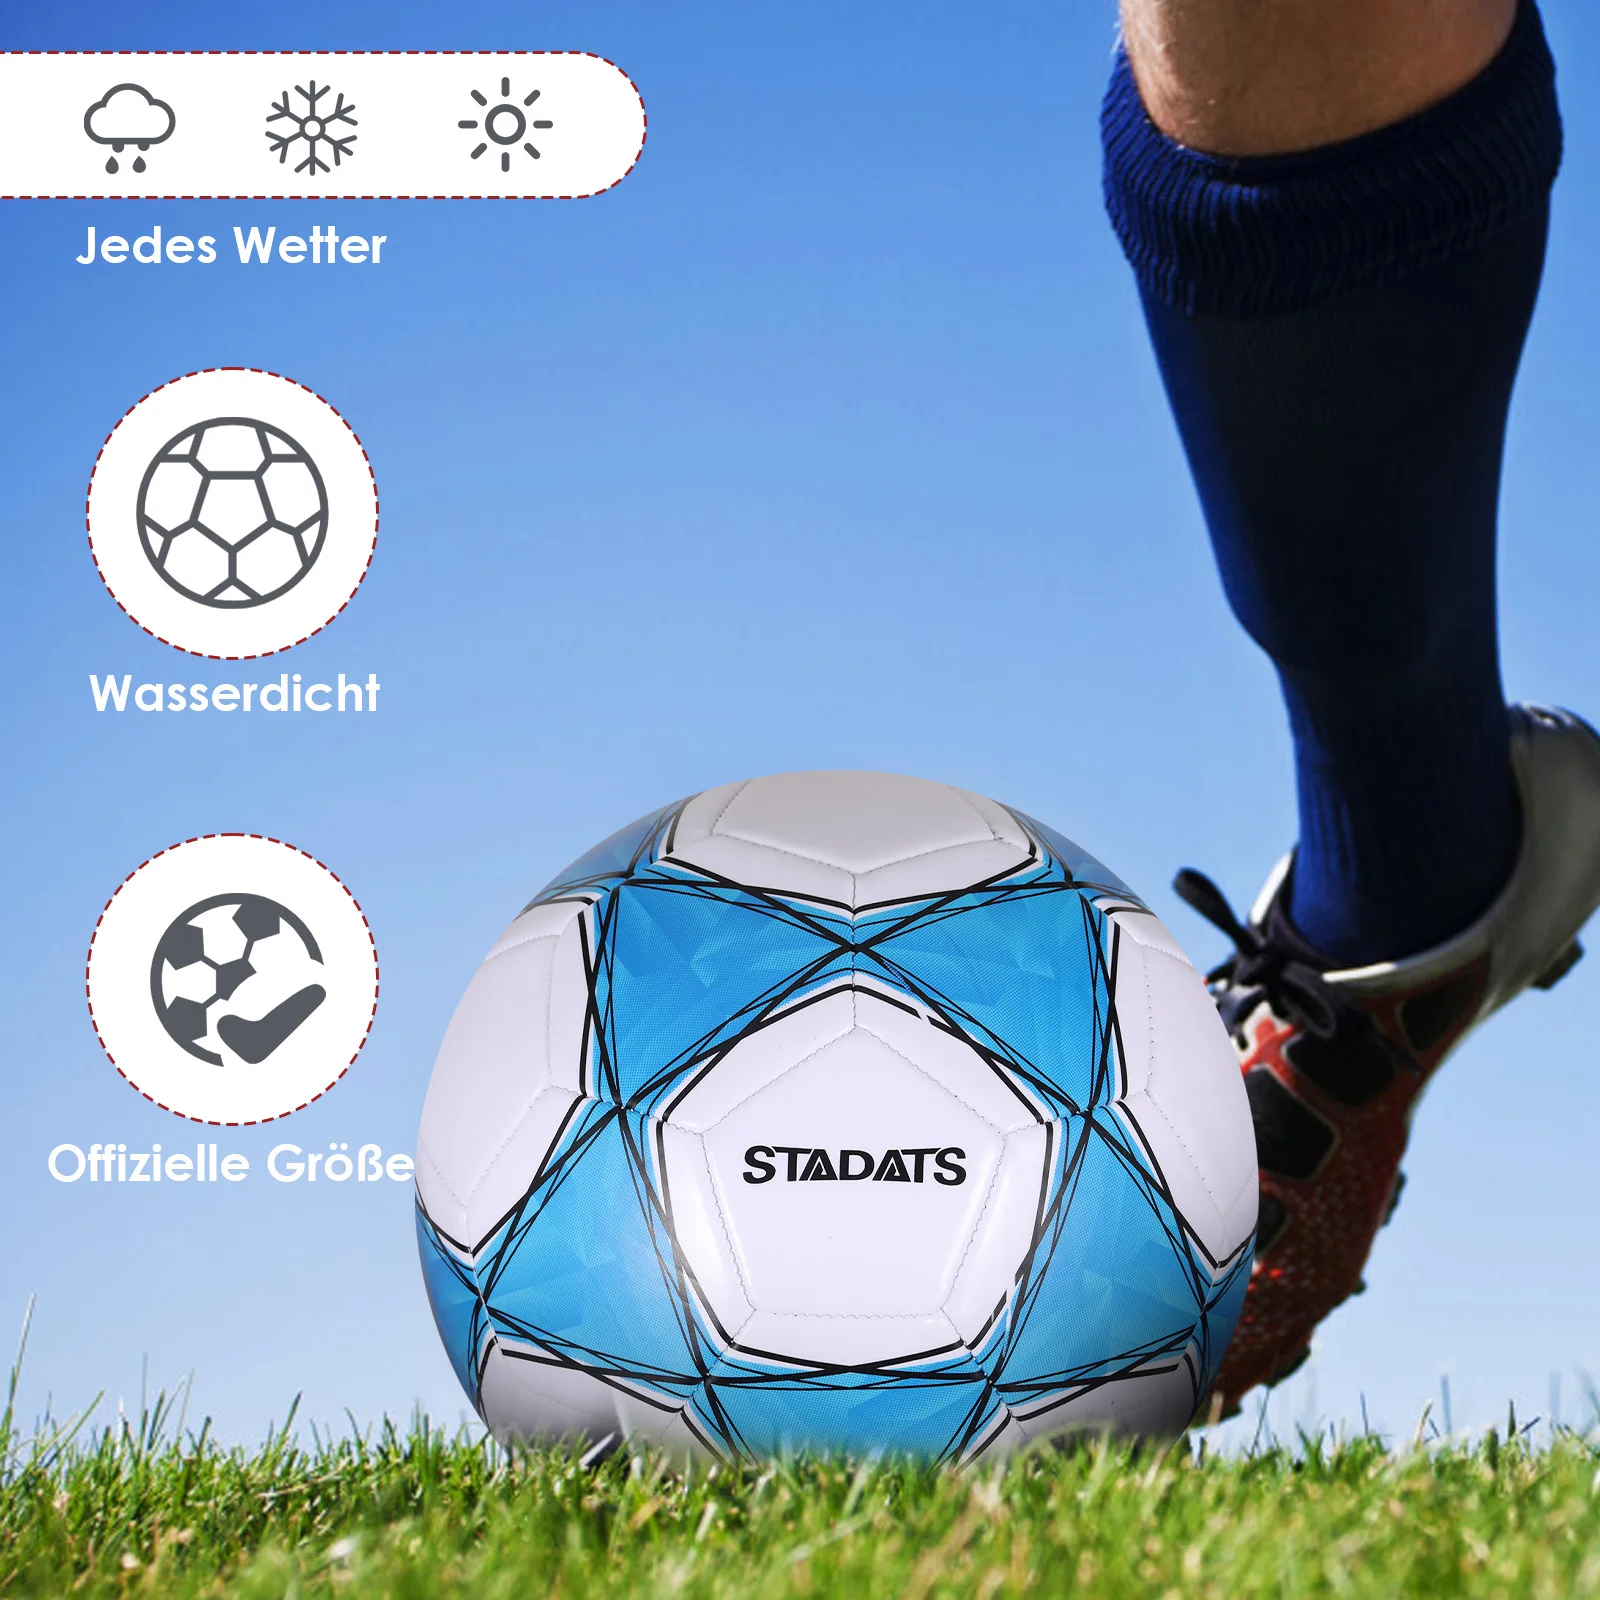 

Professional Match Balls Soccer Balls Official Size 5 Sports League Match Training Balls Seamless Goal Team Football